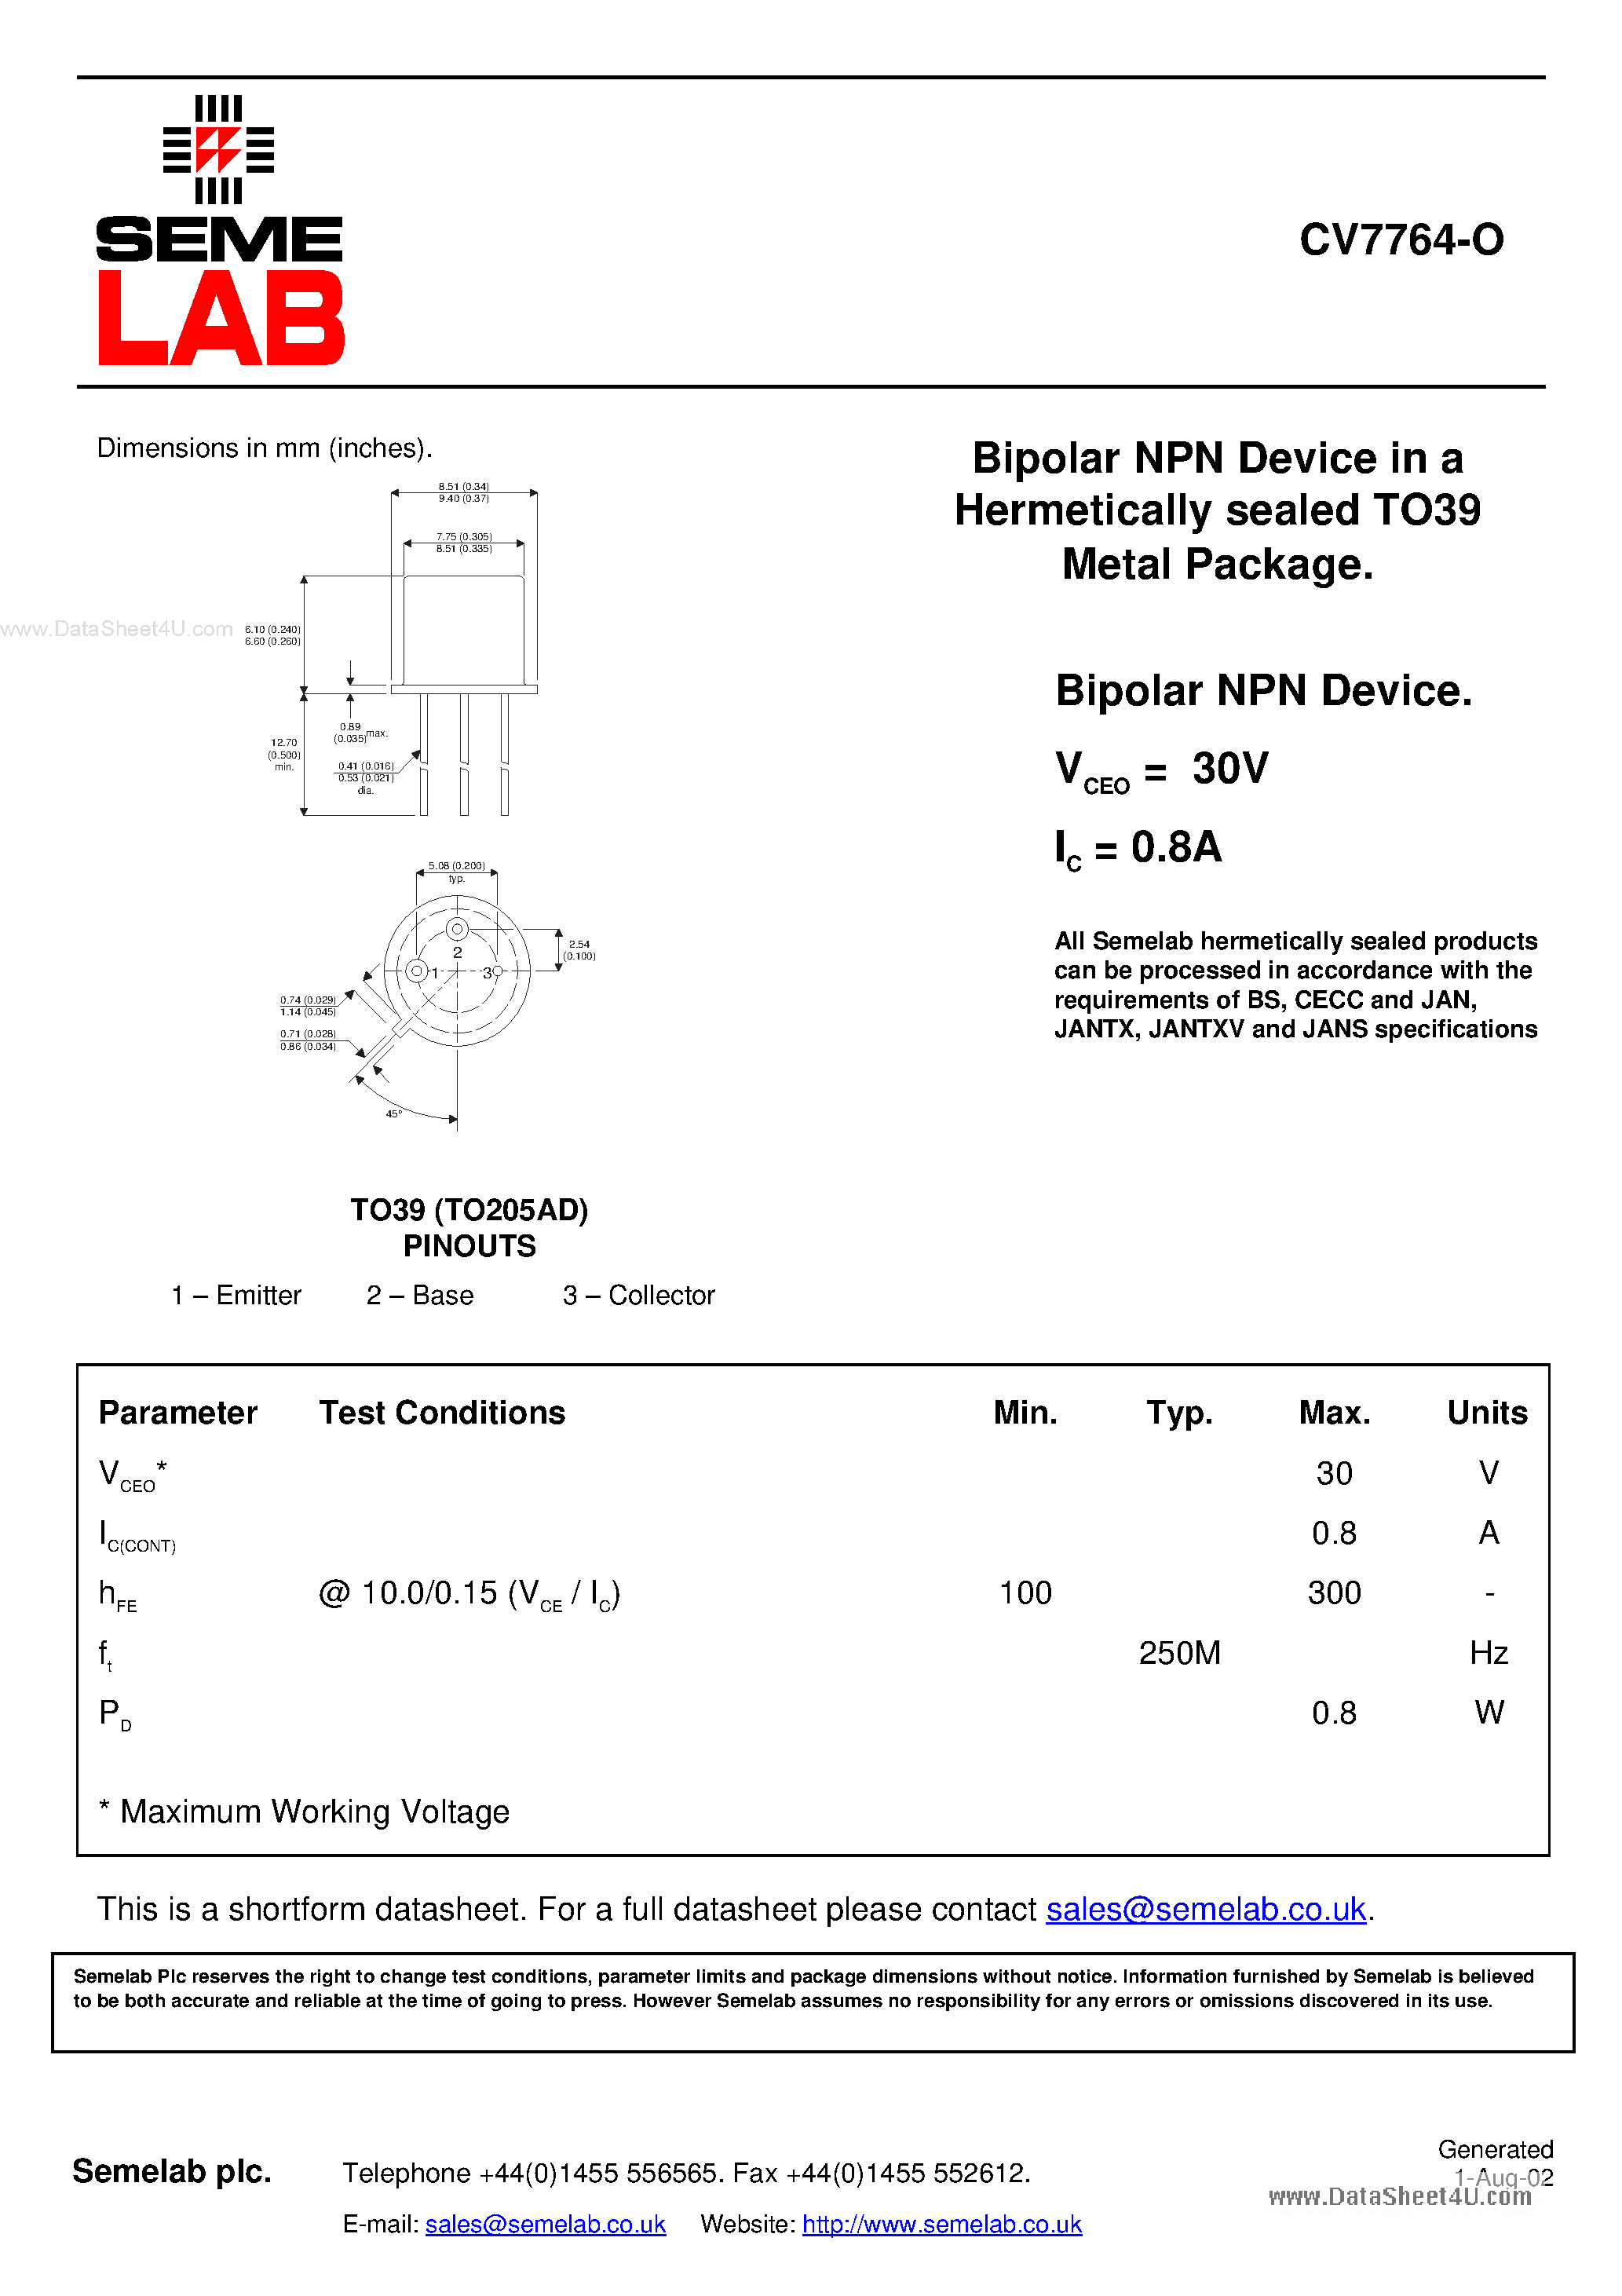 Datasheet CV7764-O - Bipolar NPN Device page 1